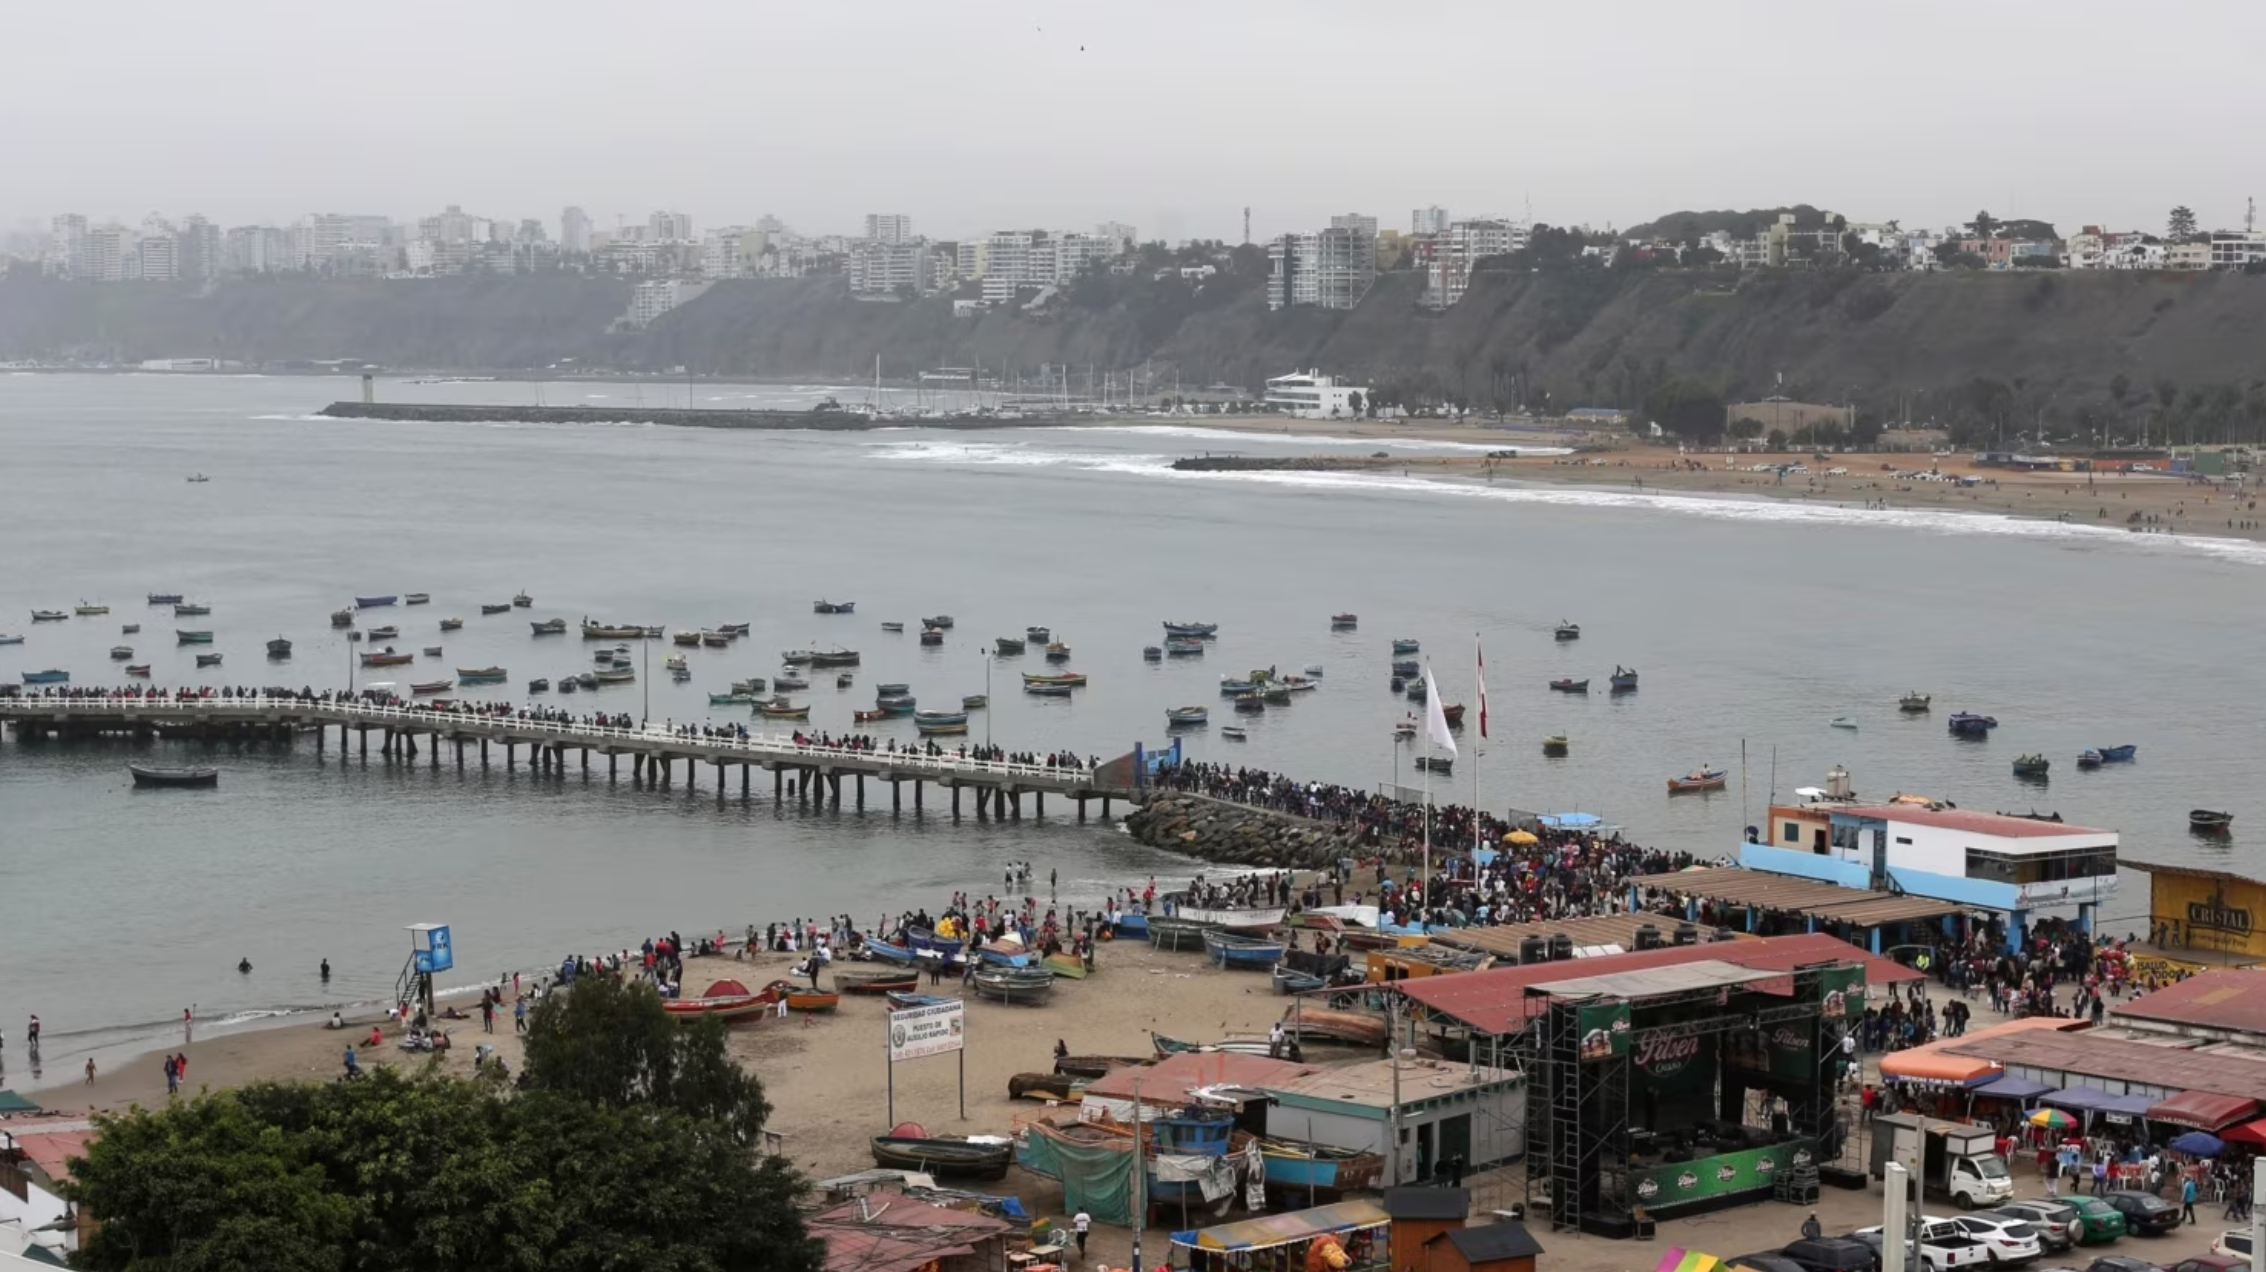 Les fortes houles du Pacifique entraînent la fermeture de plus de 60 % des ports péruviens